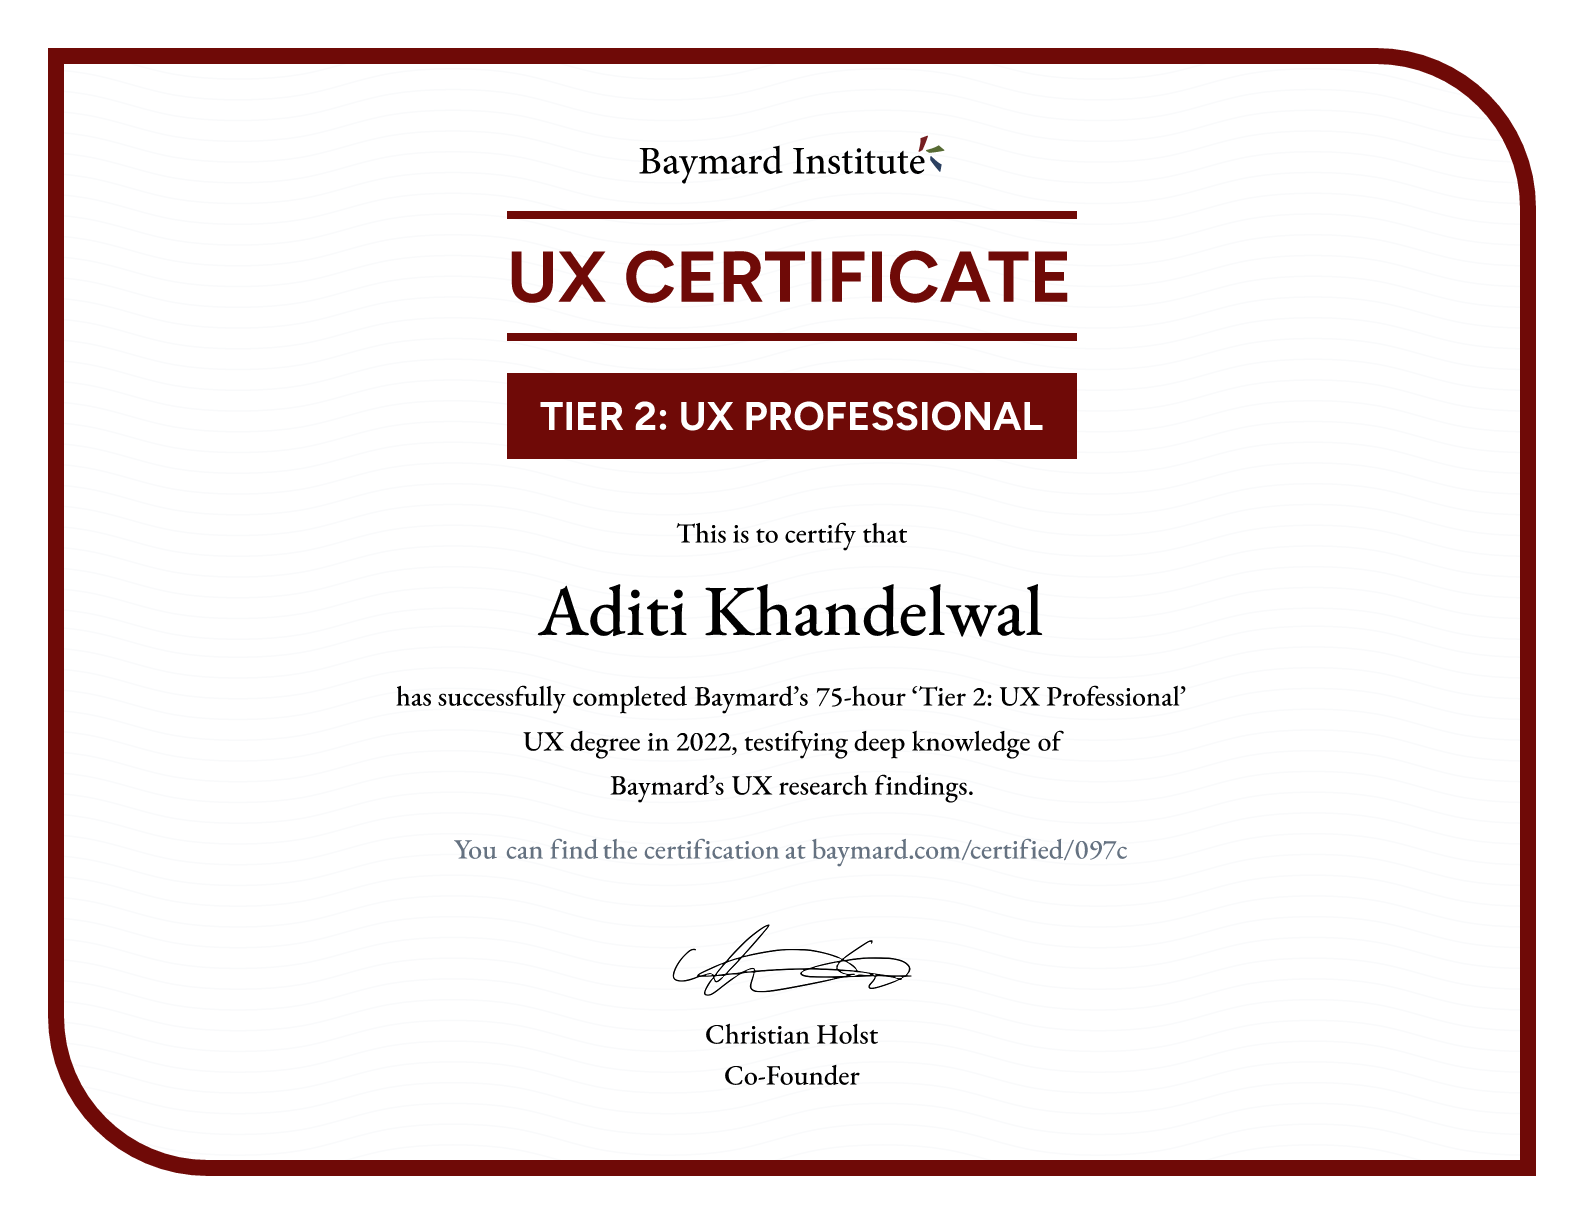 Aditi Khandelwal’s certificate